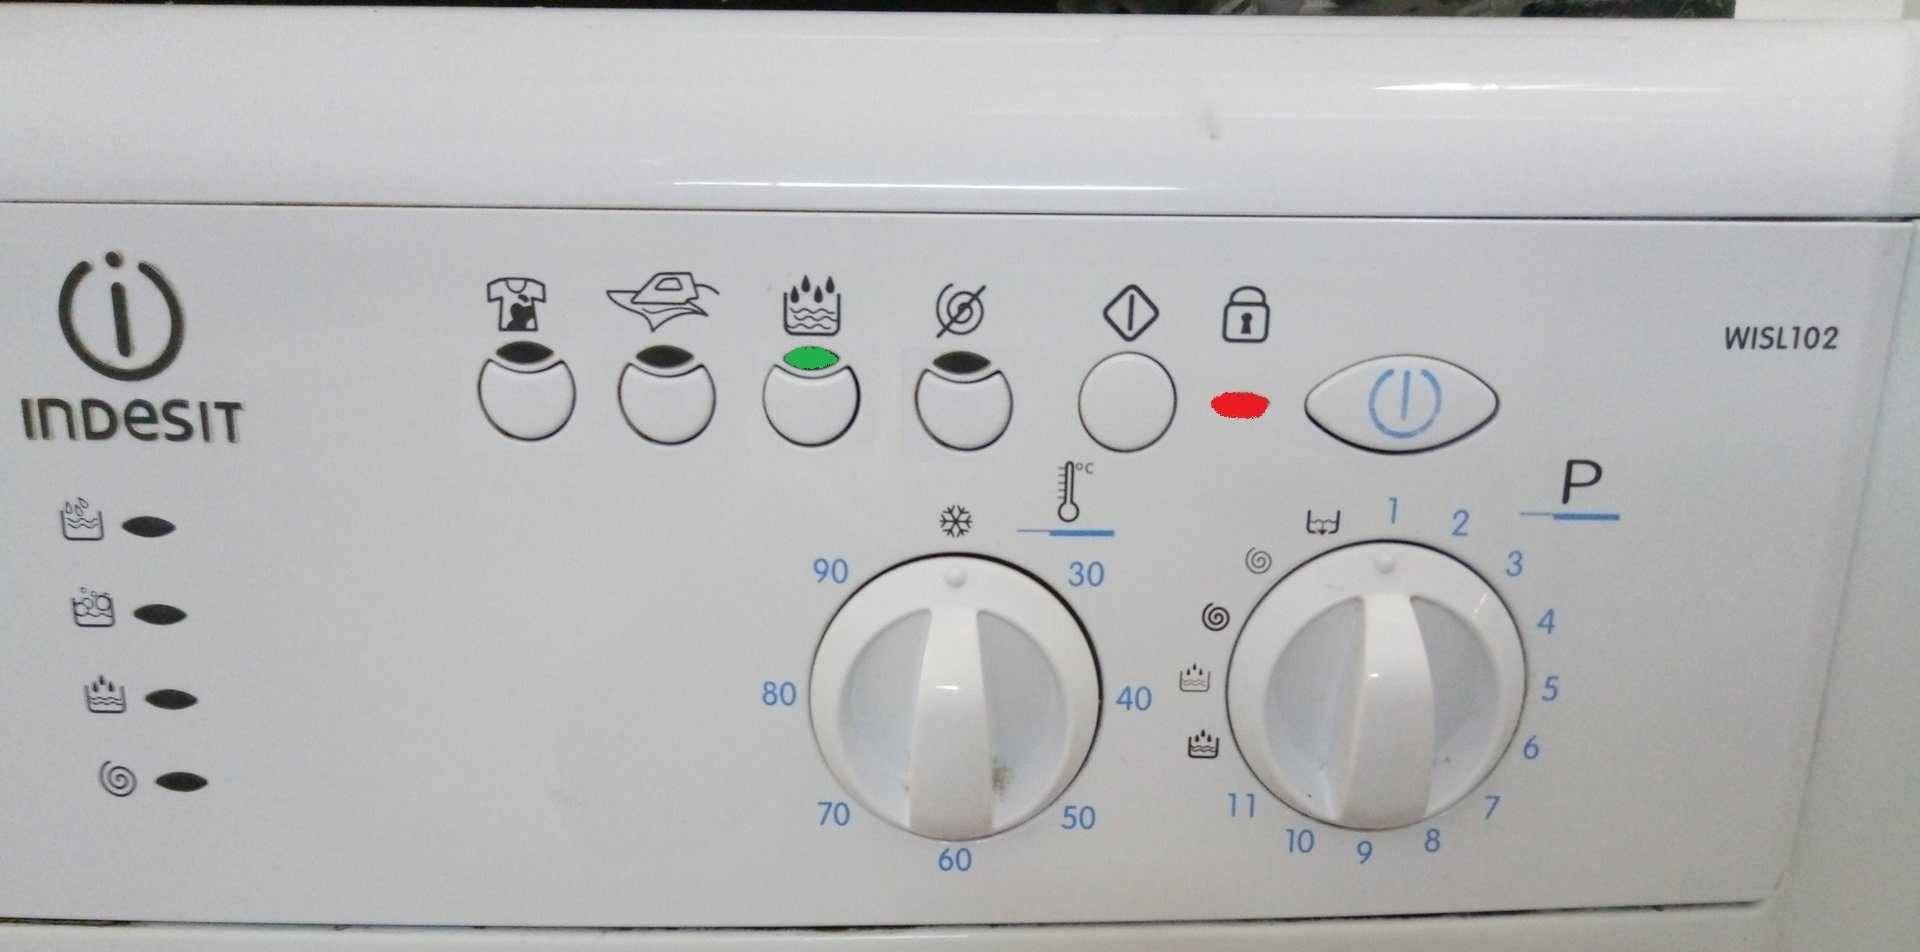 Ошибка f12 в стиральной машине индезит - что делать?